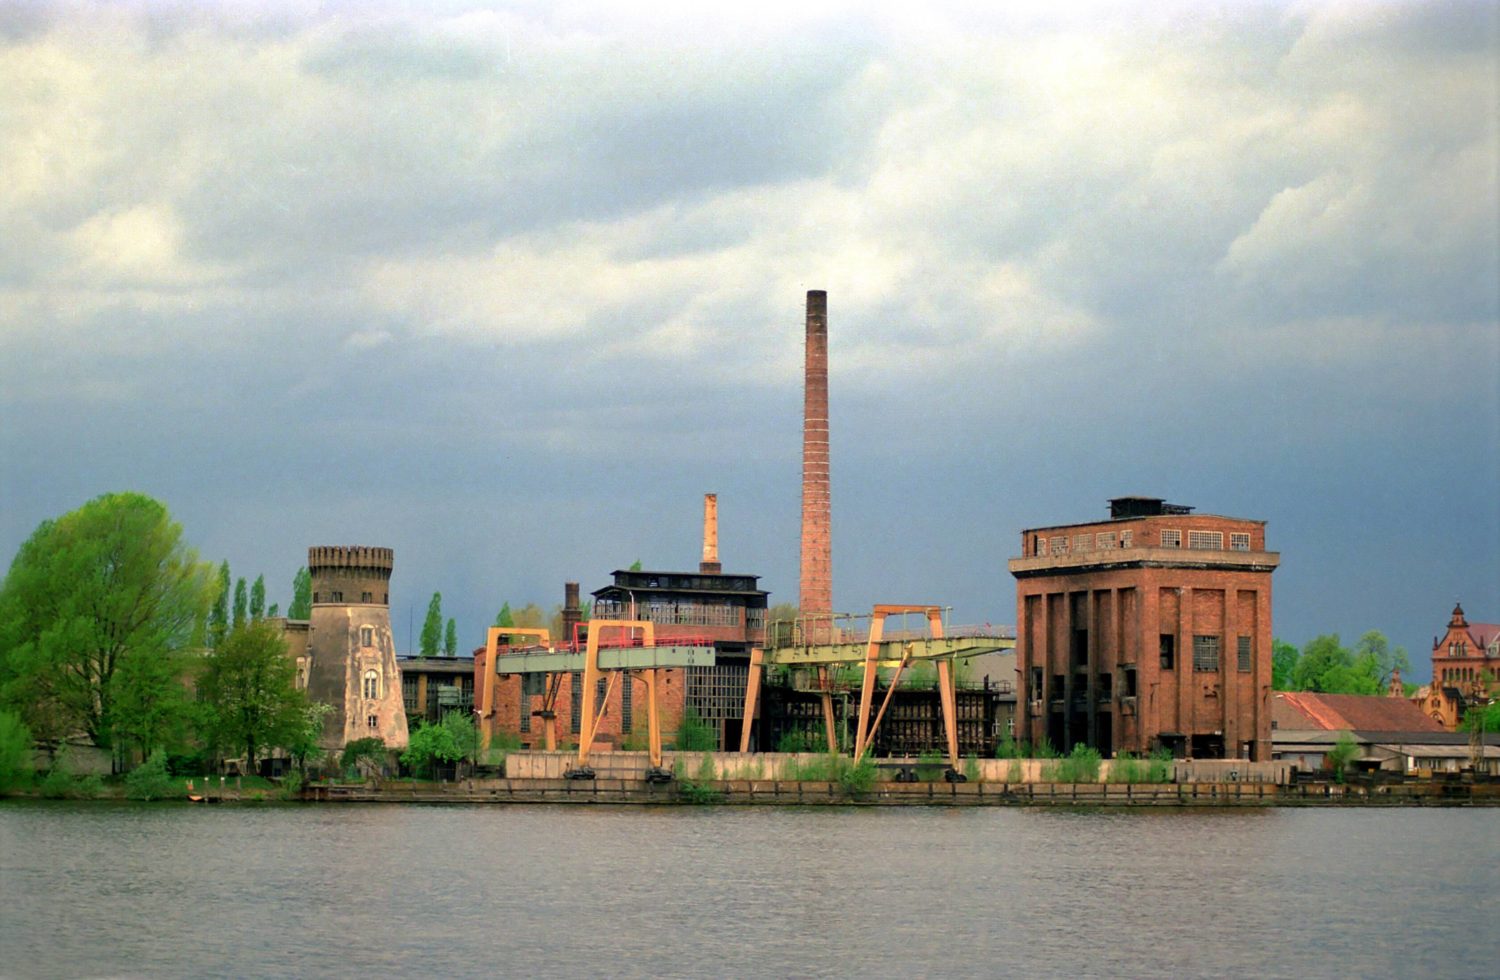 Verfallene Industrieanlage an der Havel, 1997. Foto: Imago/Lem